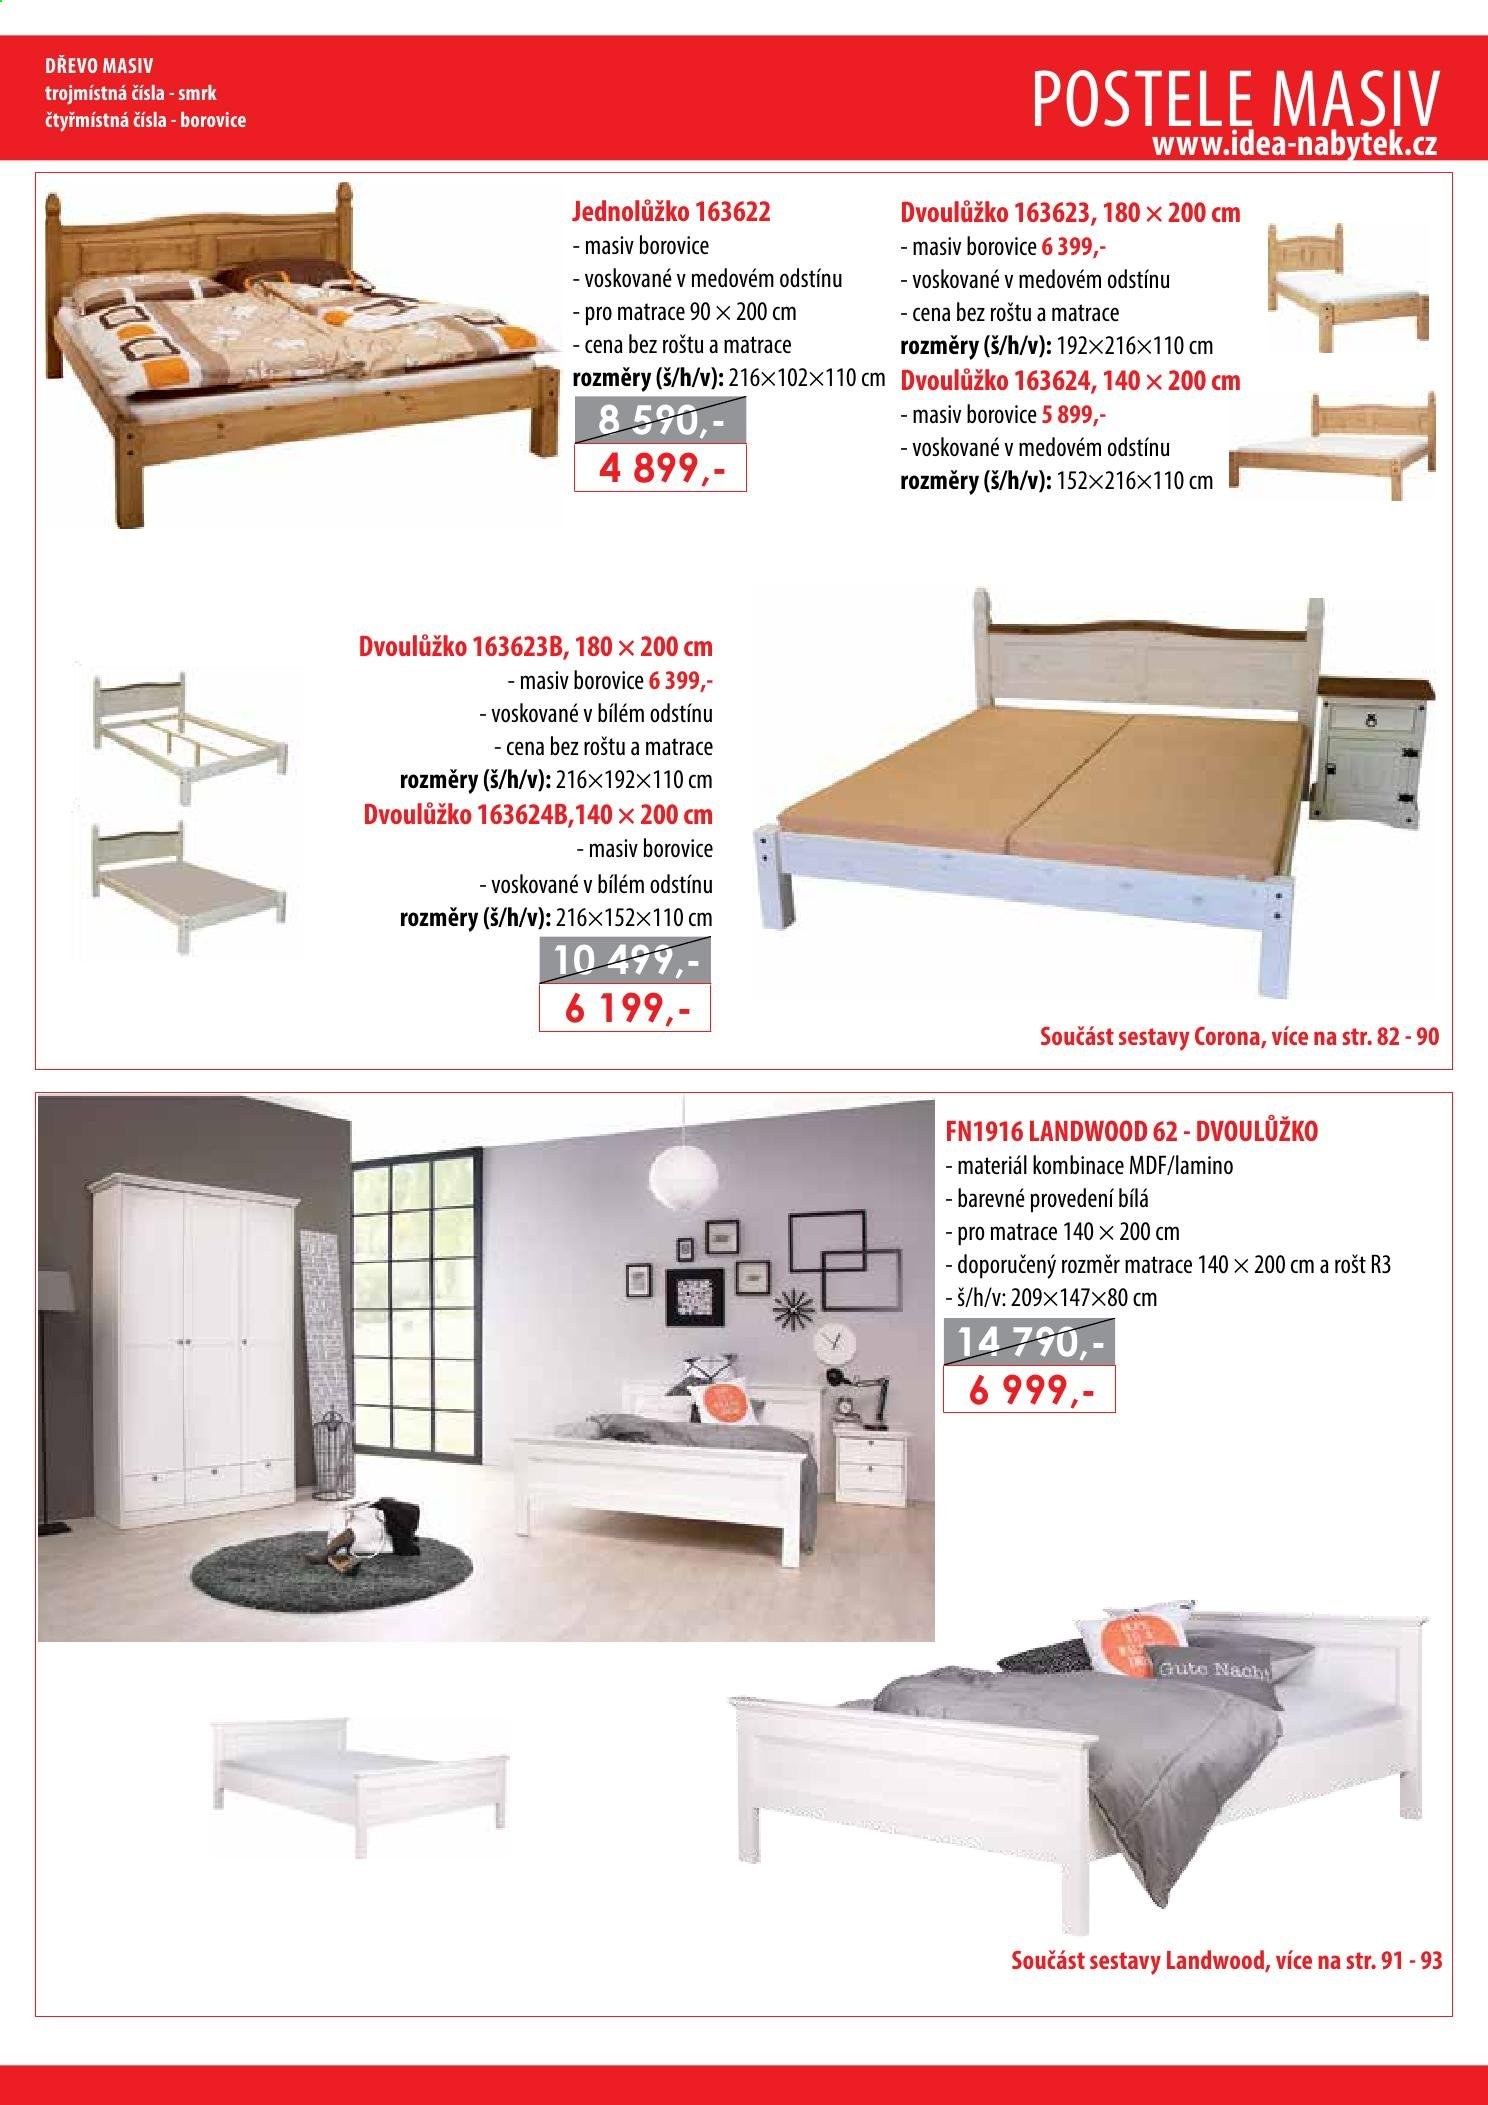 Leták IDEA nábytek - Produkty v akci - dvoulůžko, postel, matrace, rošt. Strana 11.